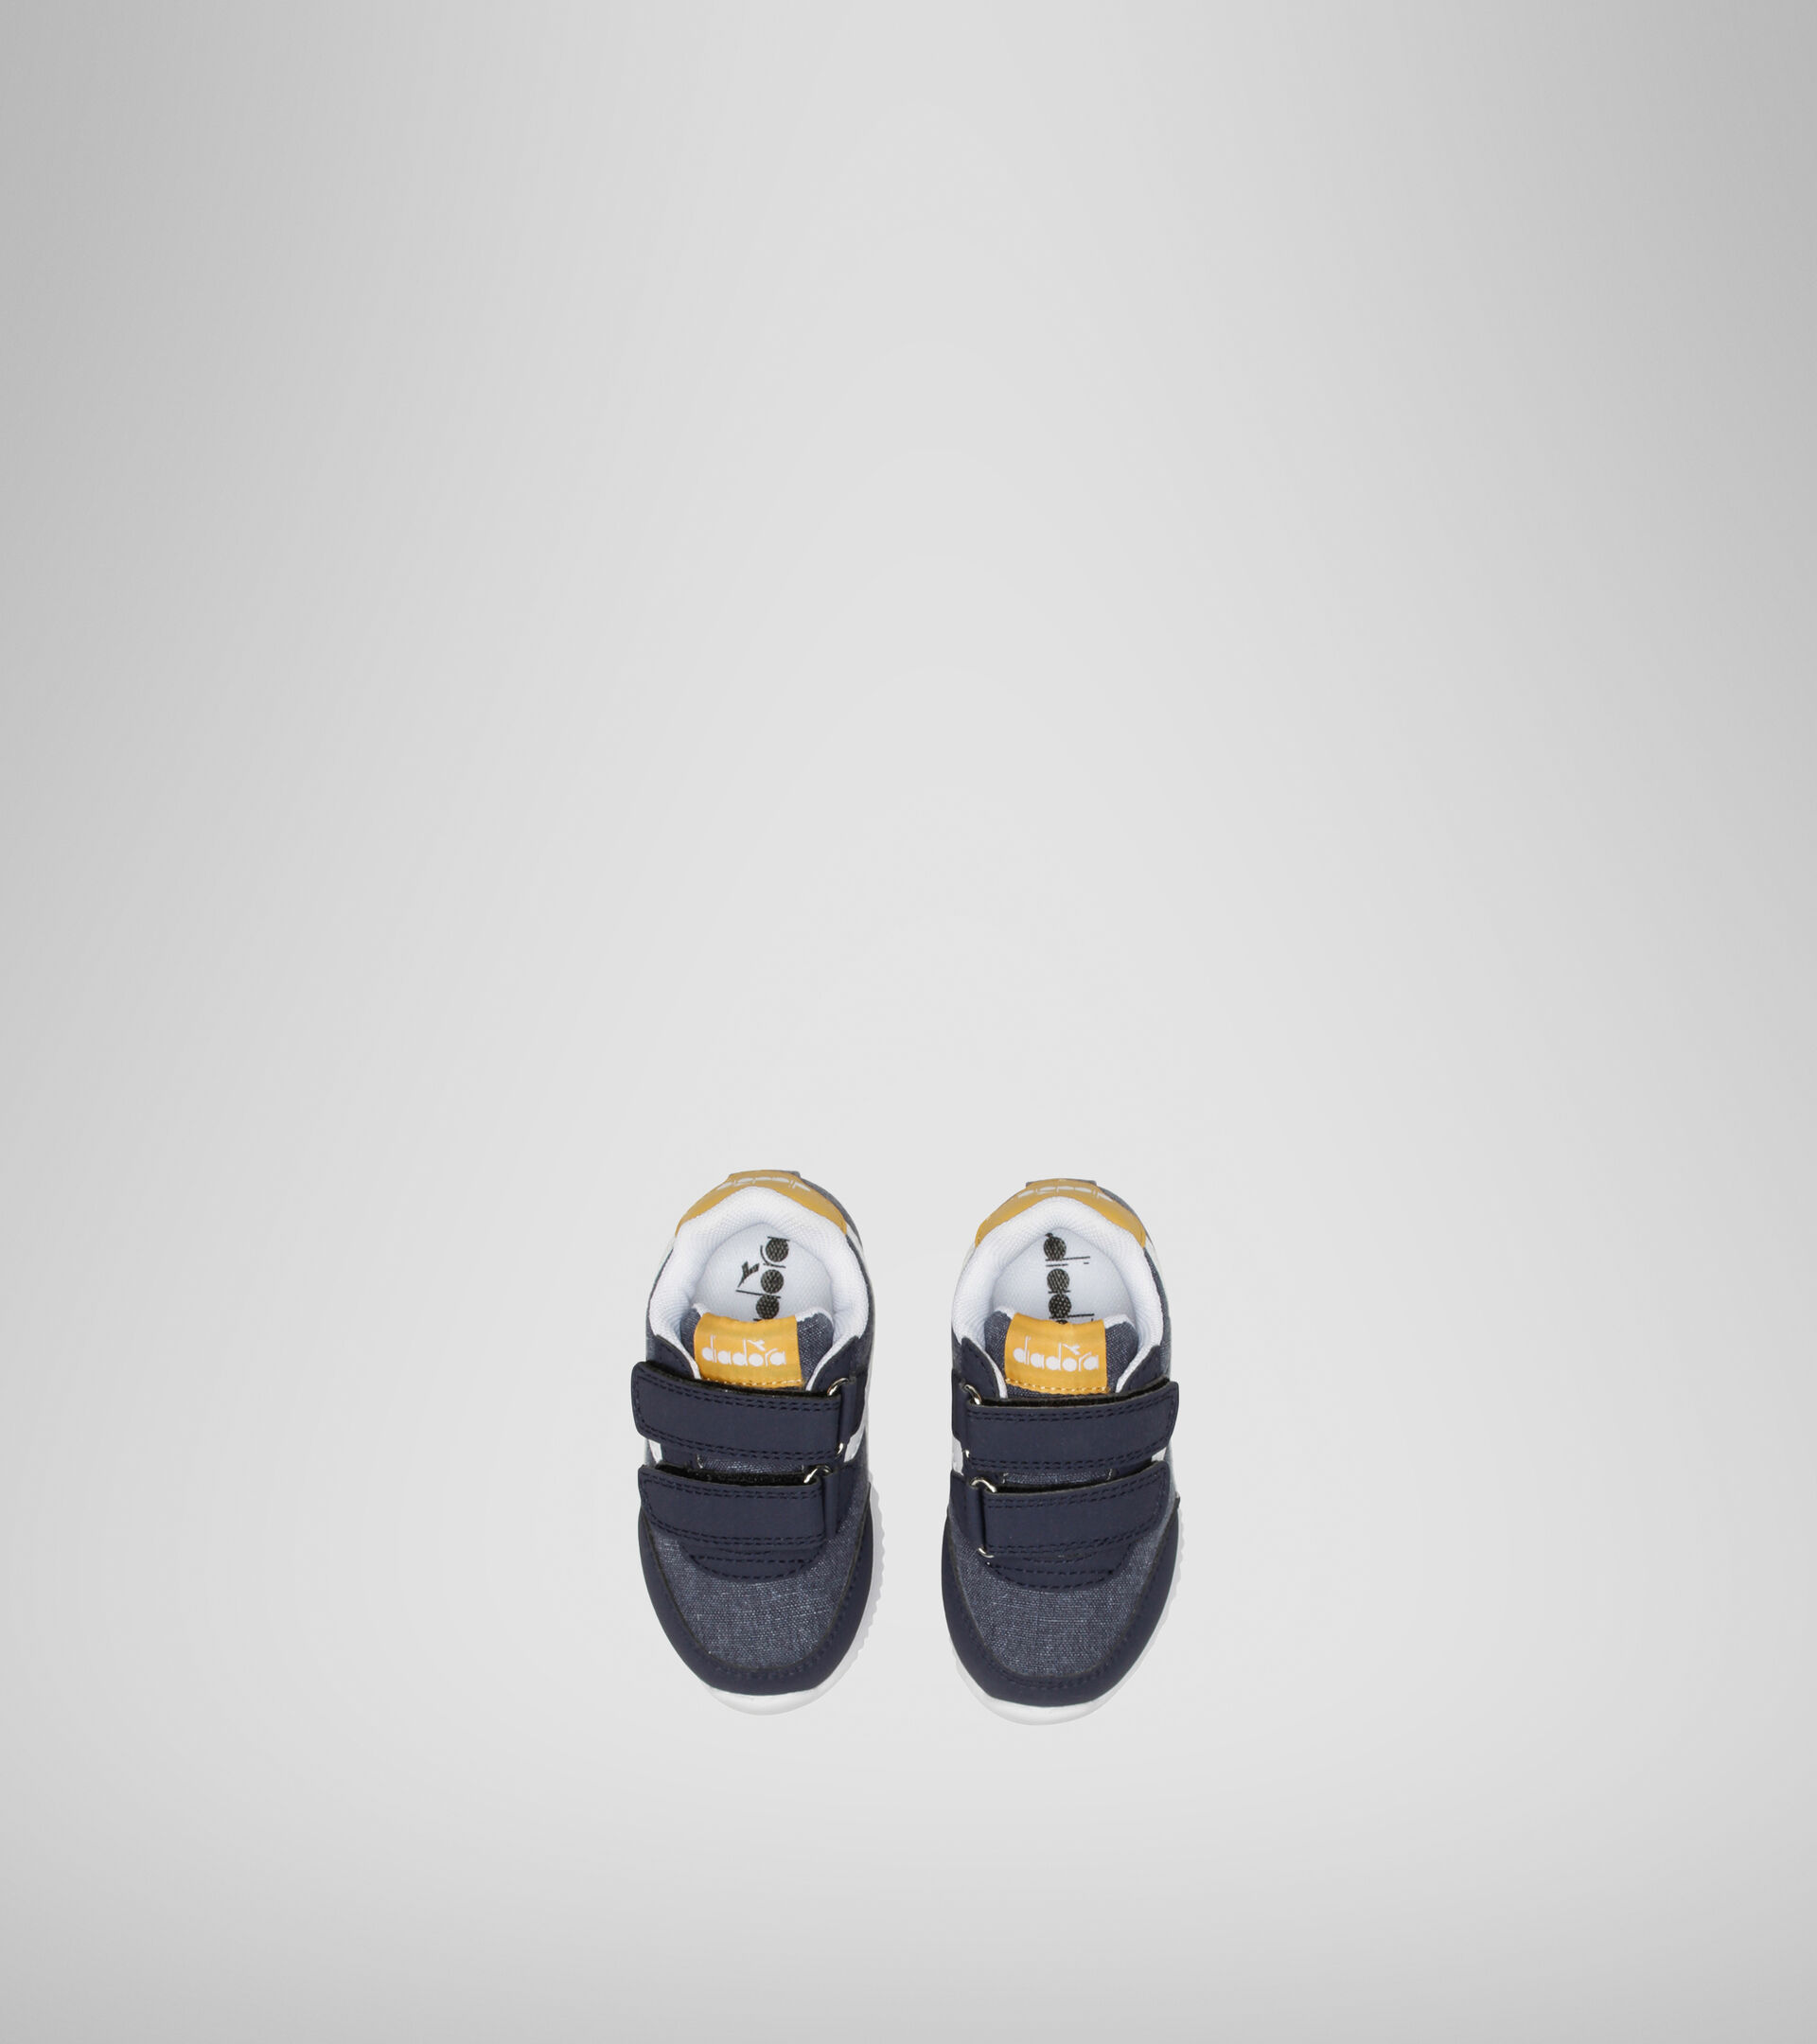 Chaussures de sport - Bambins 1-4 ans JOG LIGHT TD NOIR IRIS/ABRICOT DORE - Diadora